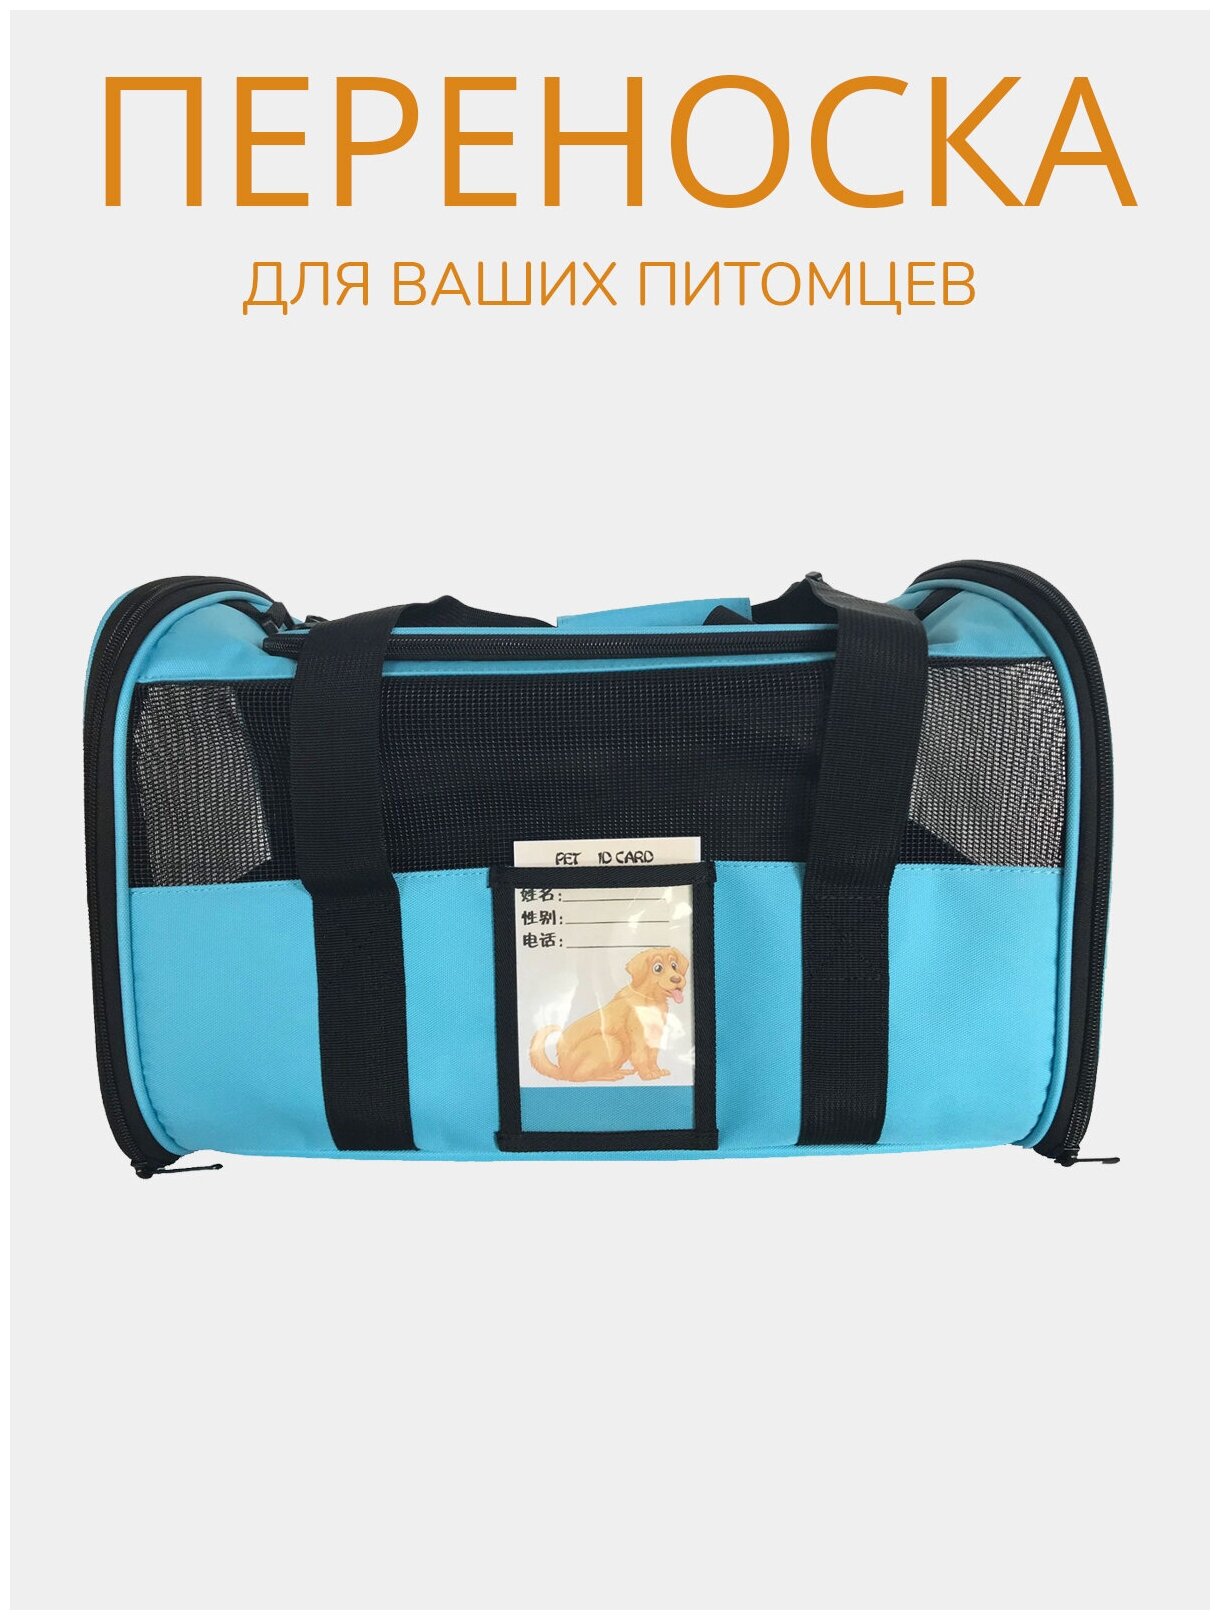 Переноска для животных ZES, сетчатая сумка для переноски кошек и собак мелких пород, размер 45х28х28, голубого цвета - фотография № 6